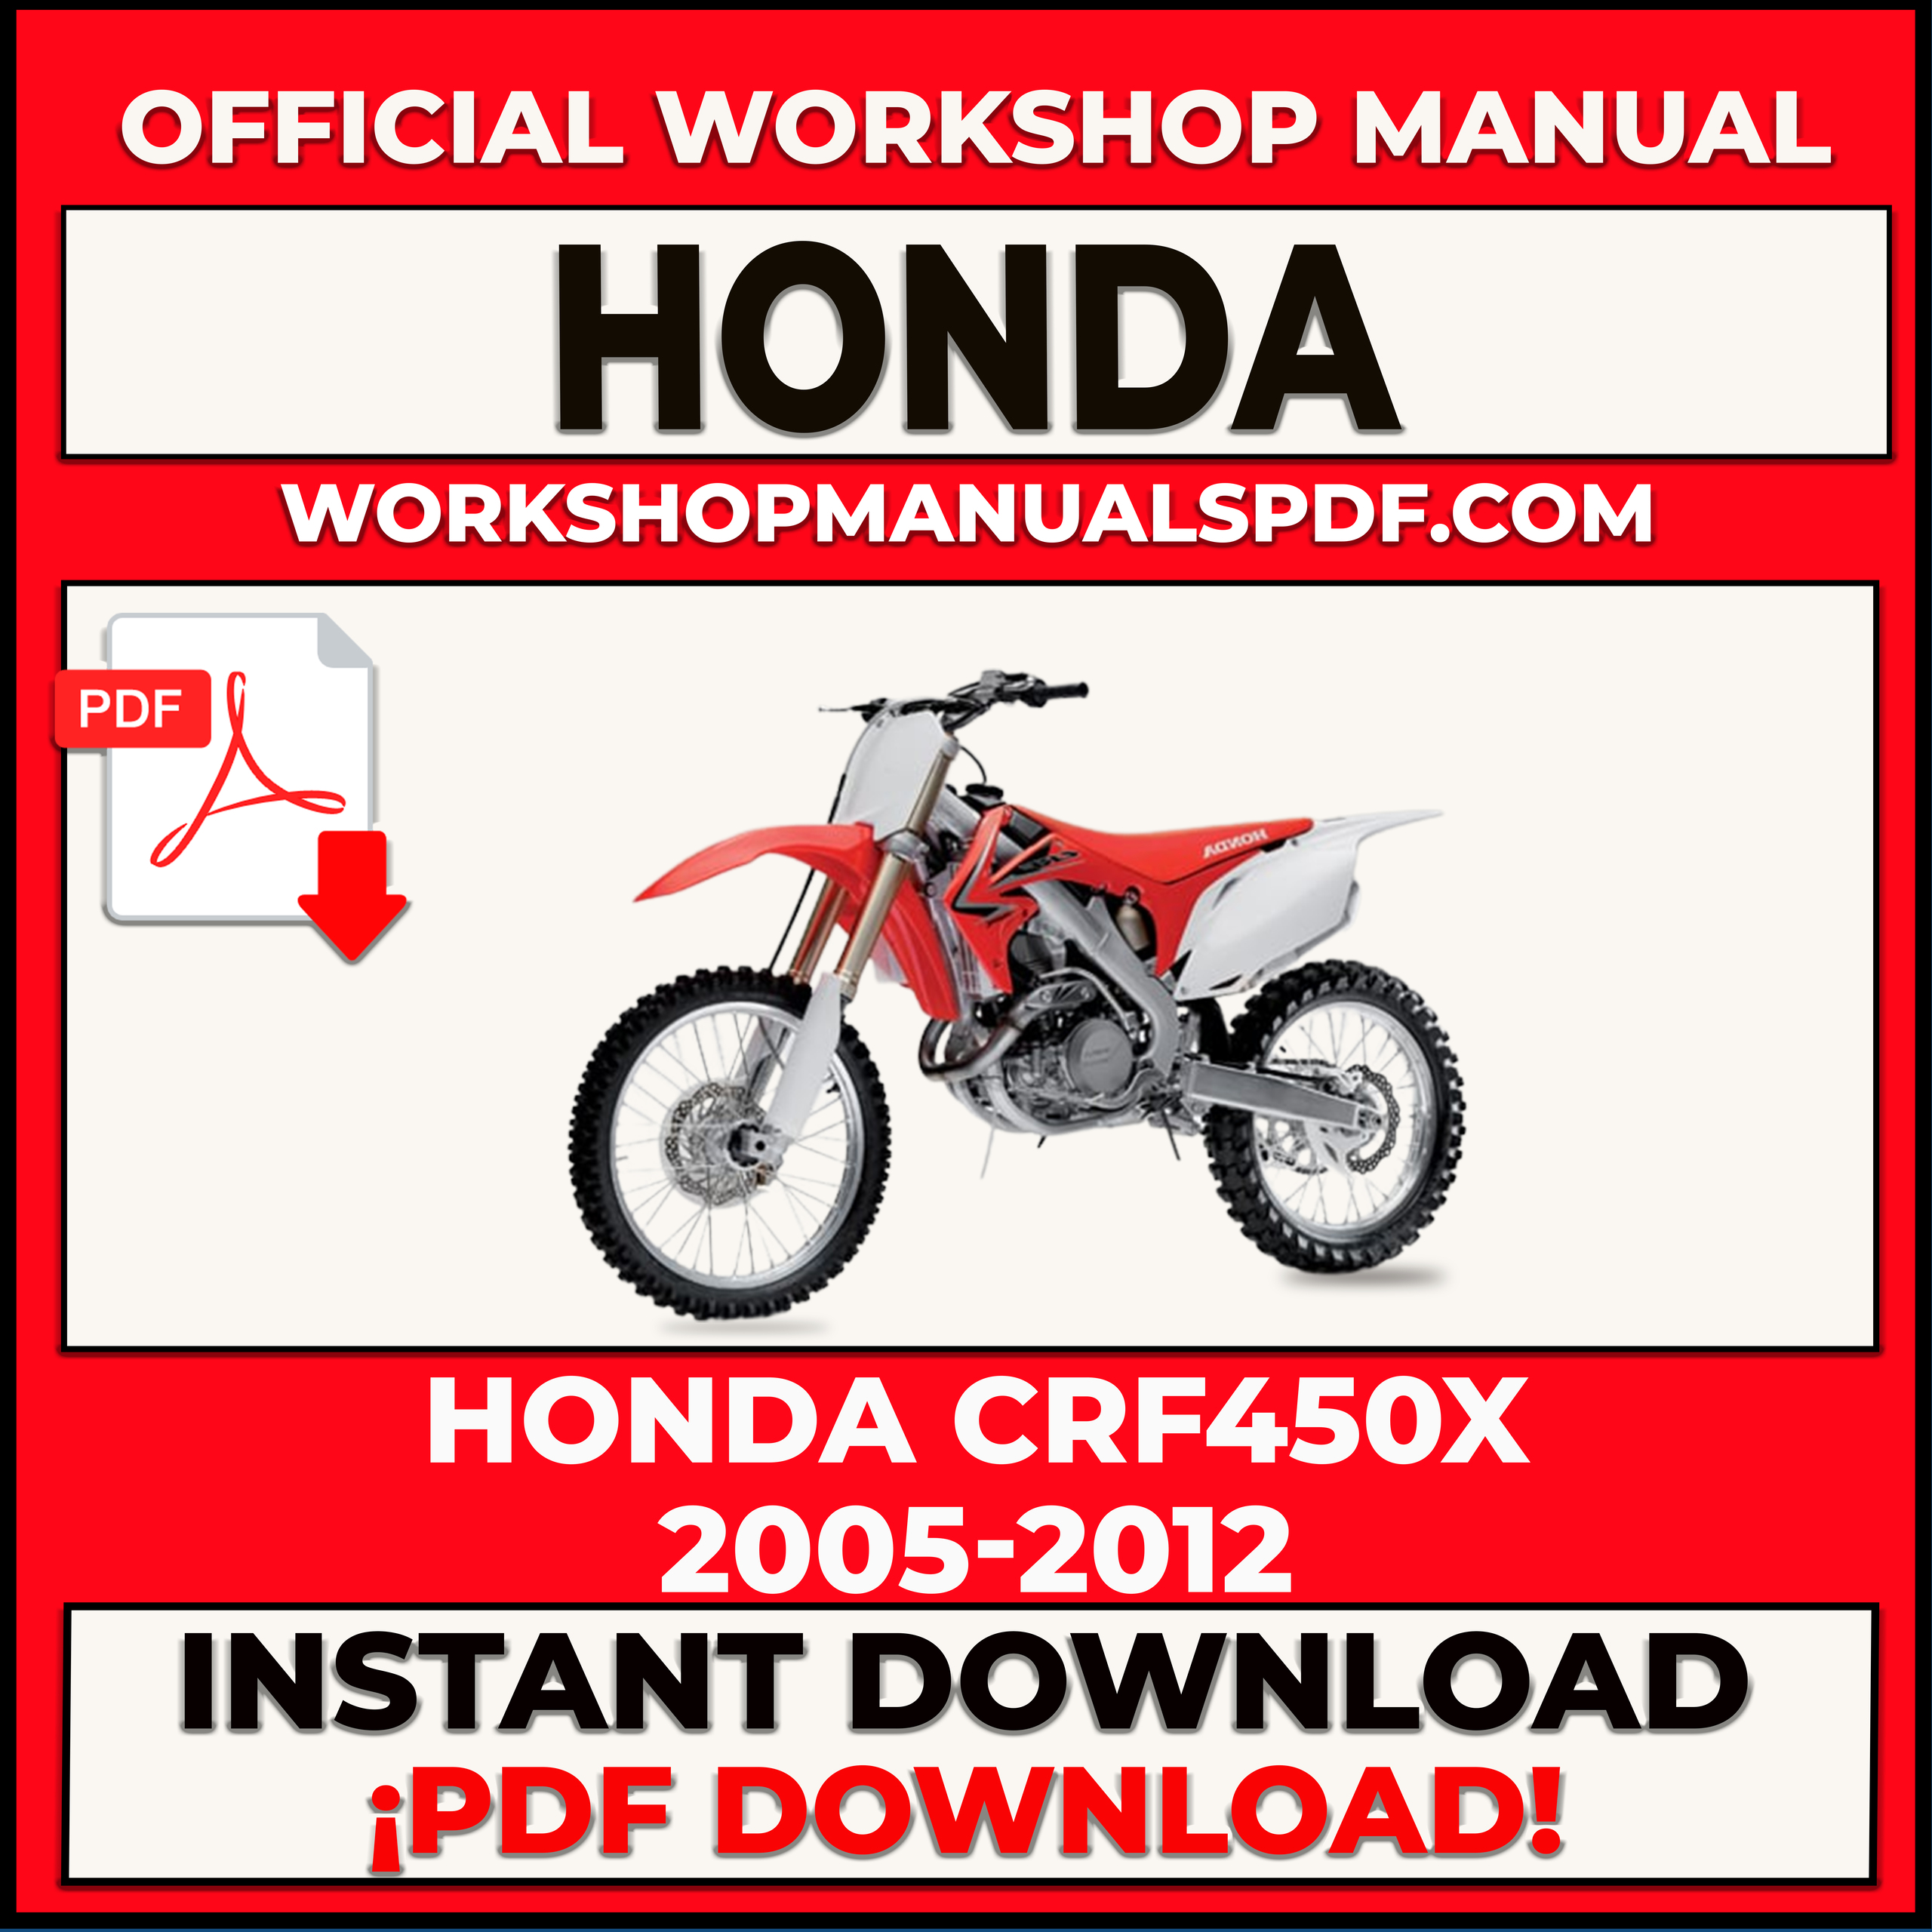 Honda CRF450X 2005-2012 Workshop Repair Manual